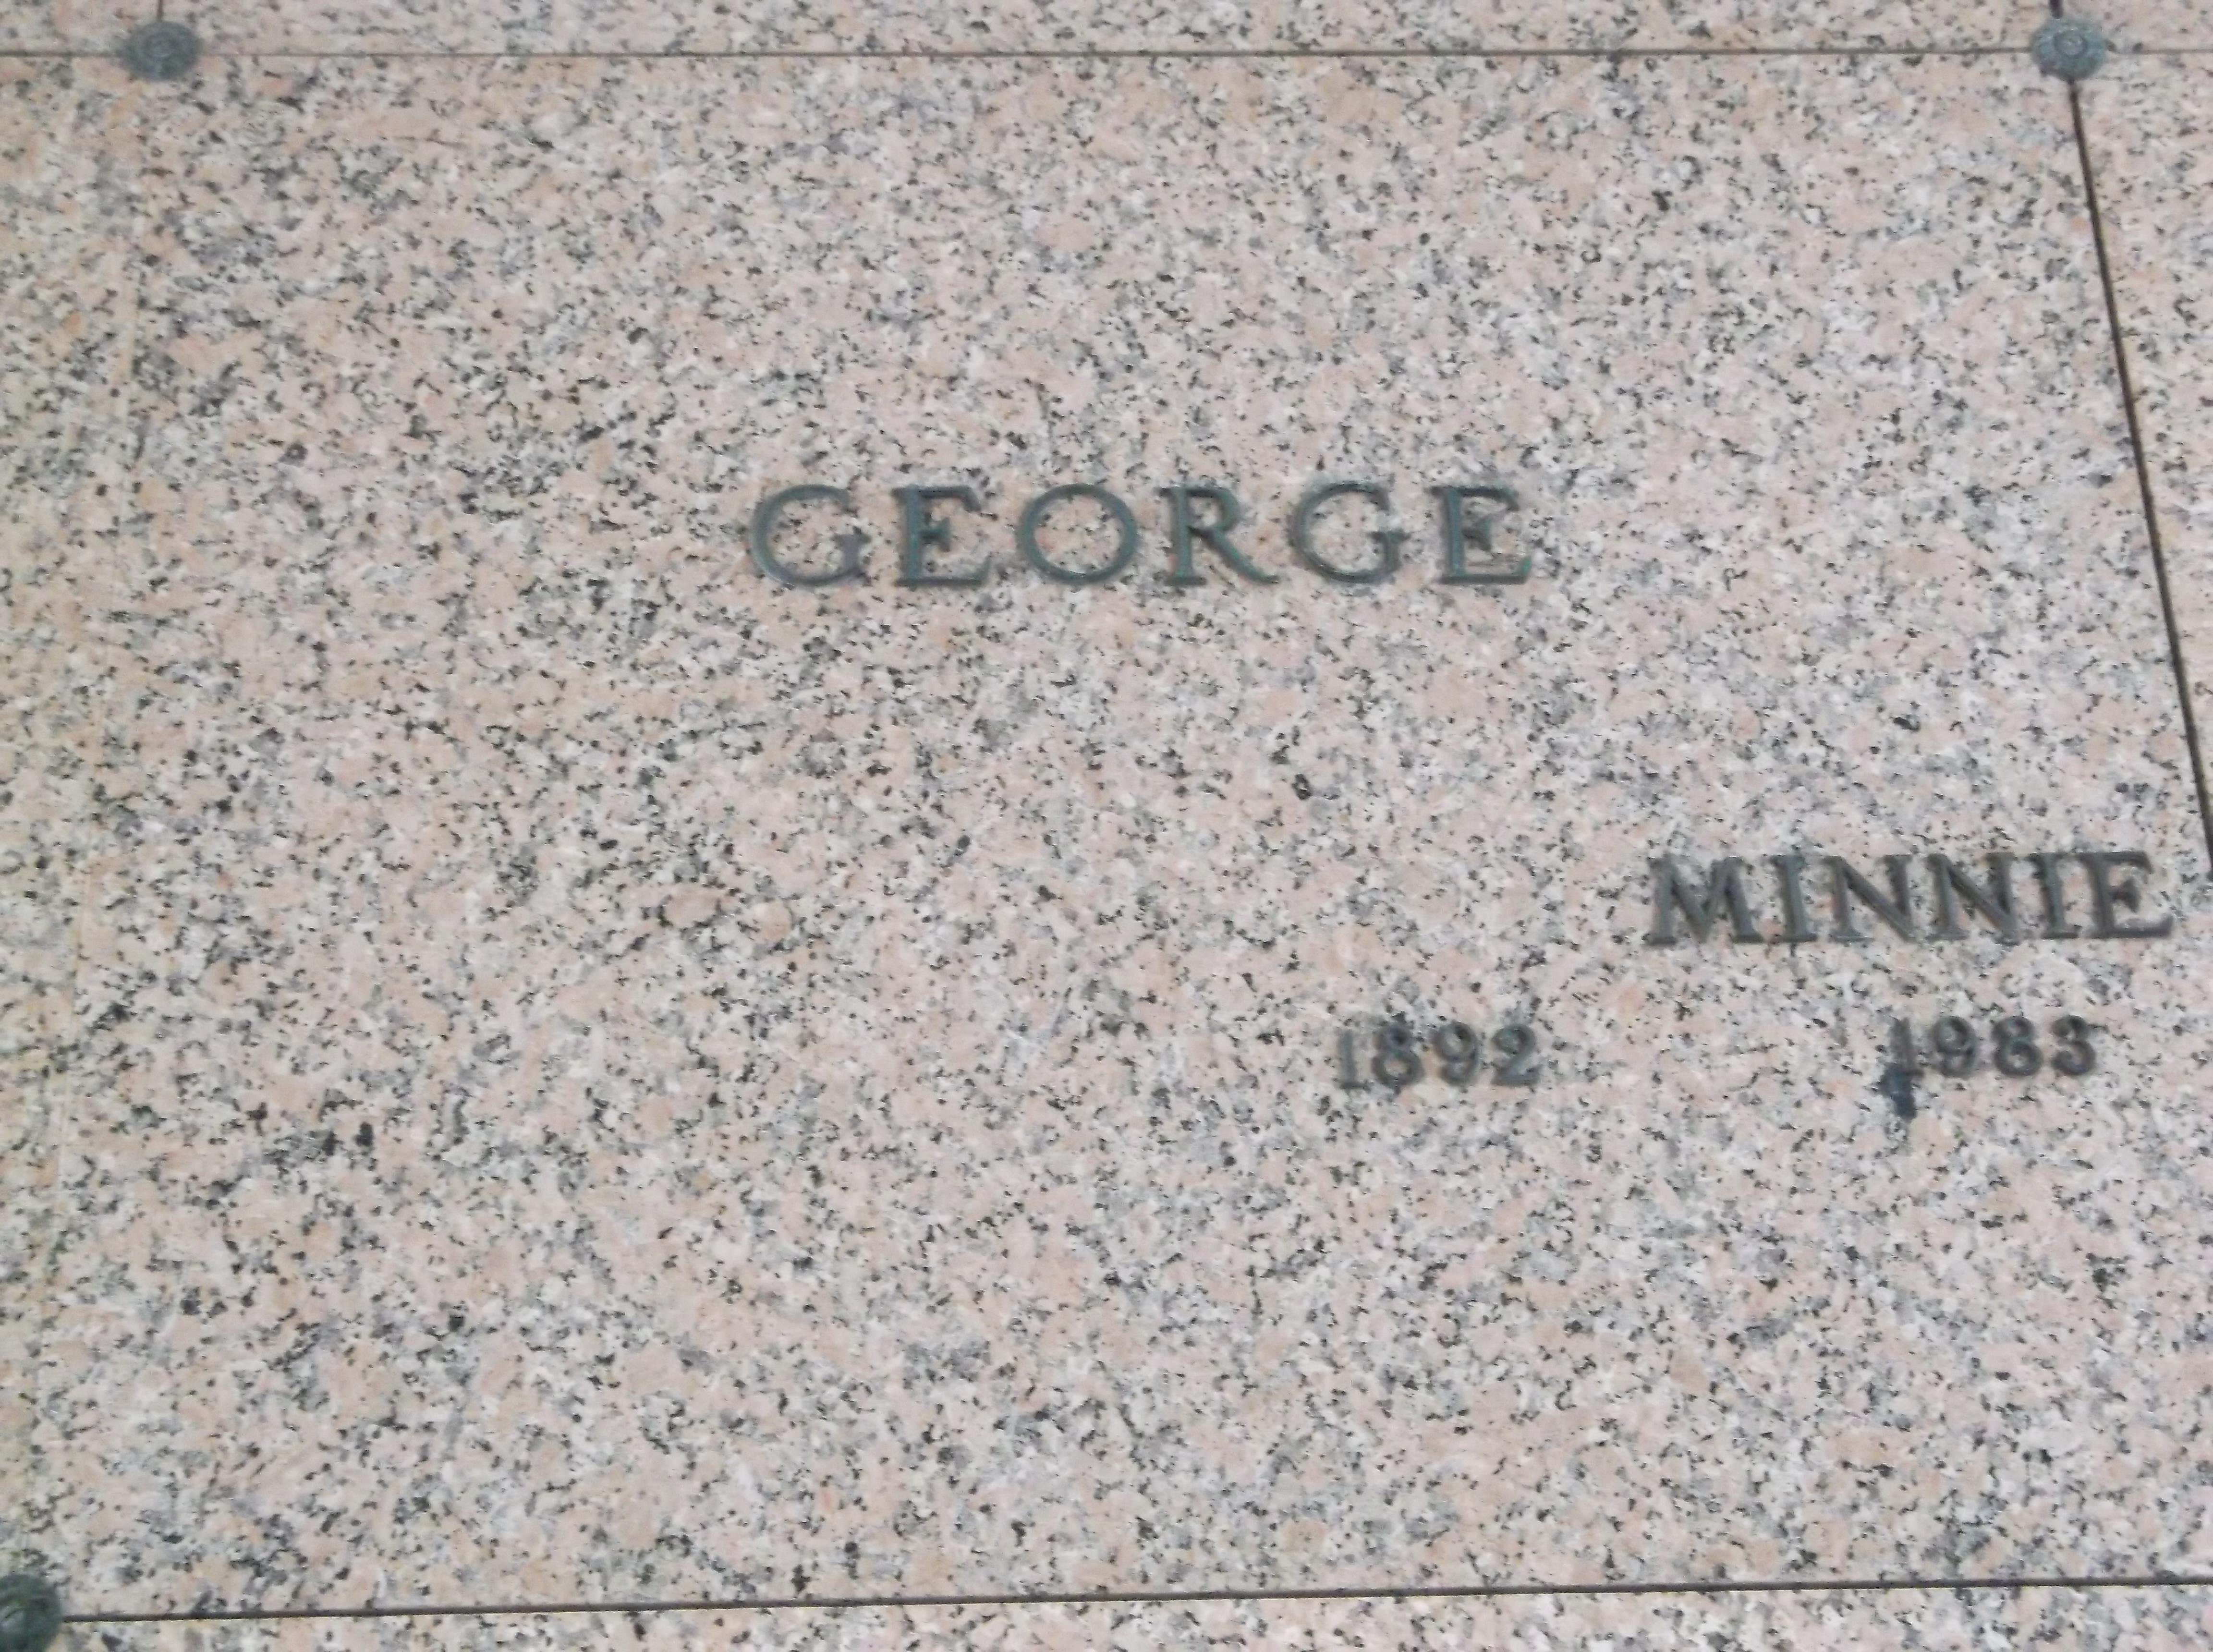 Minnie George